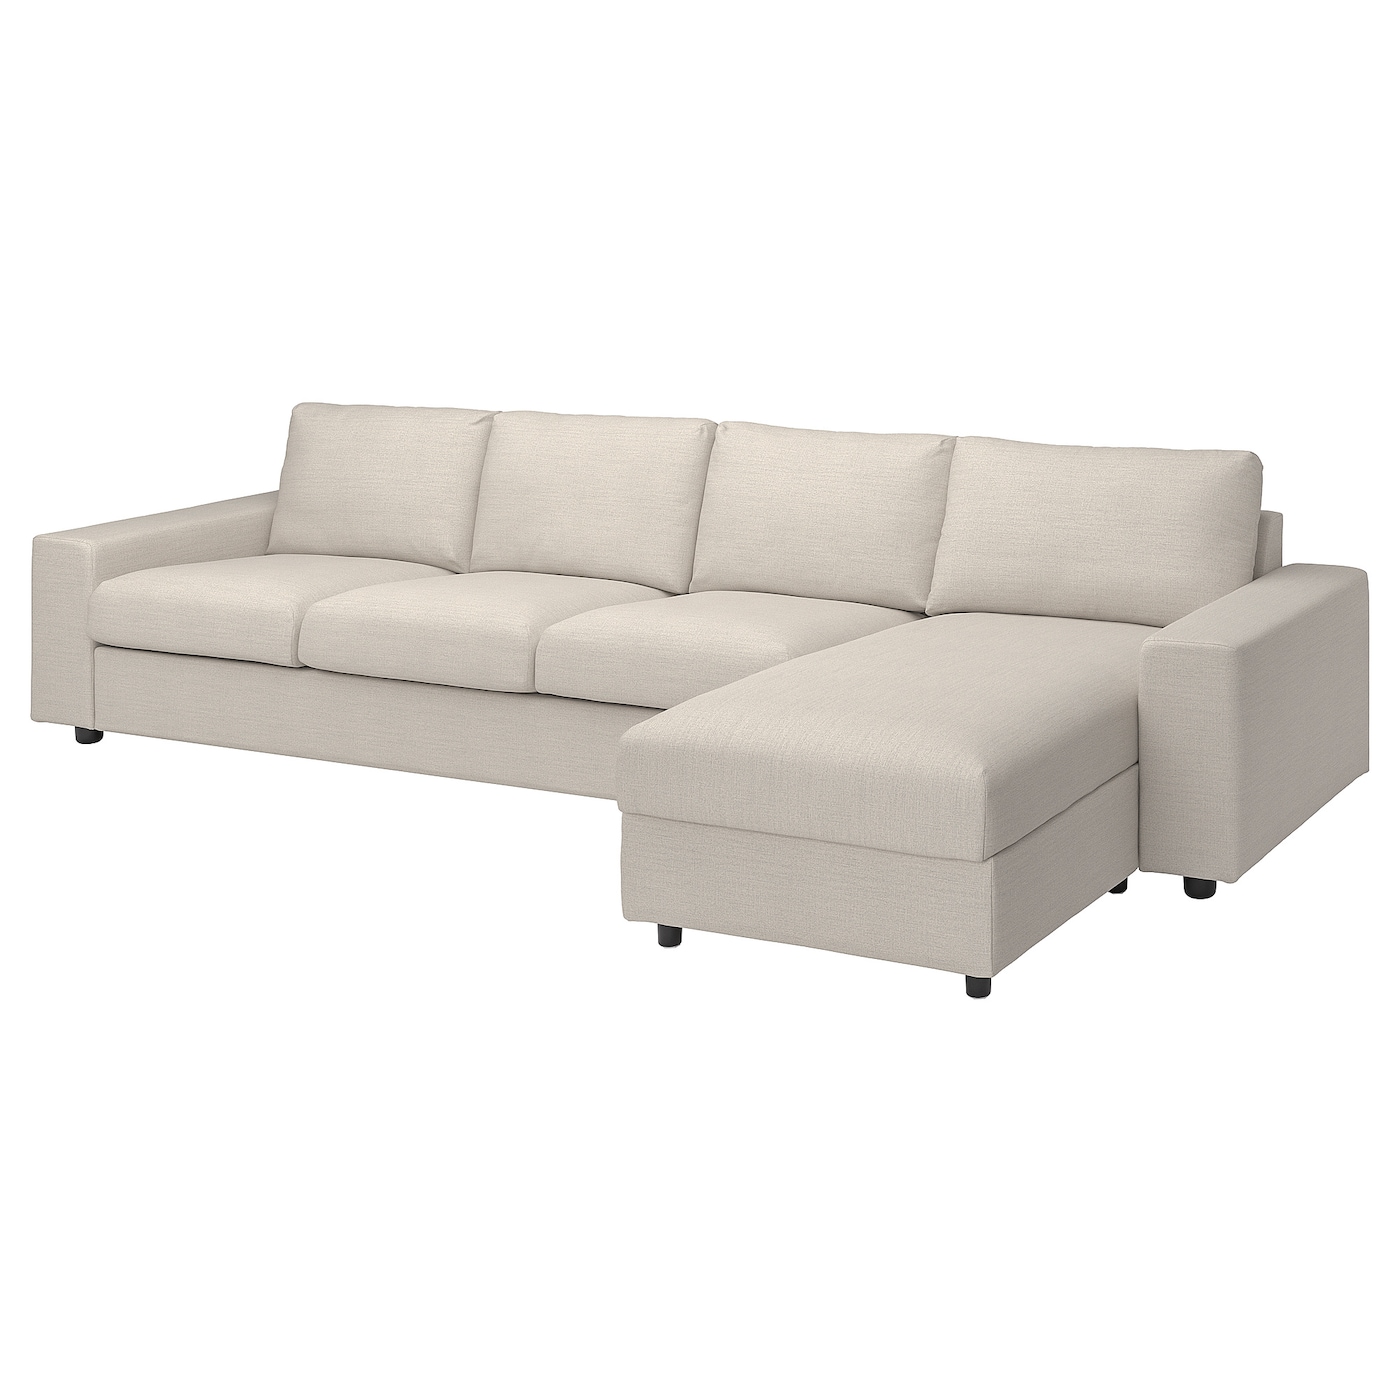 ВИМЛЕ 4-местный диван + диван, с широкими подлокотниками/Гуннаред бежевый VIMLE IKEA